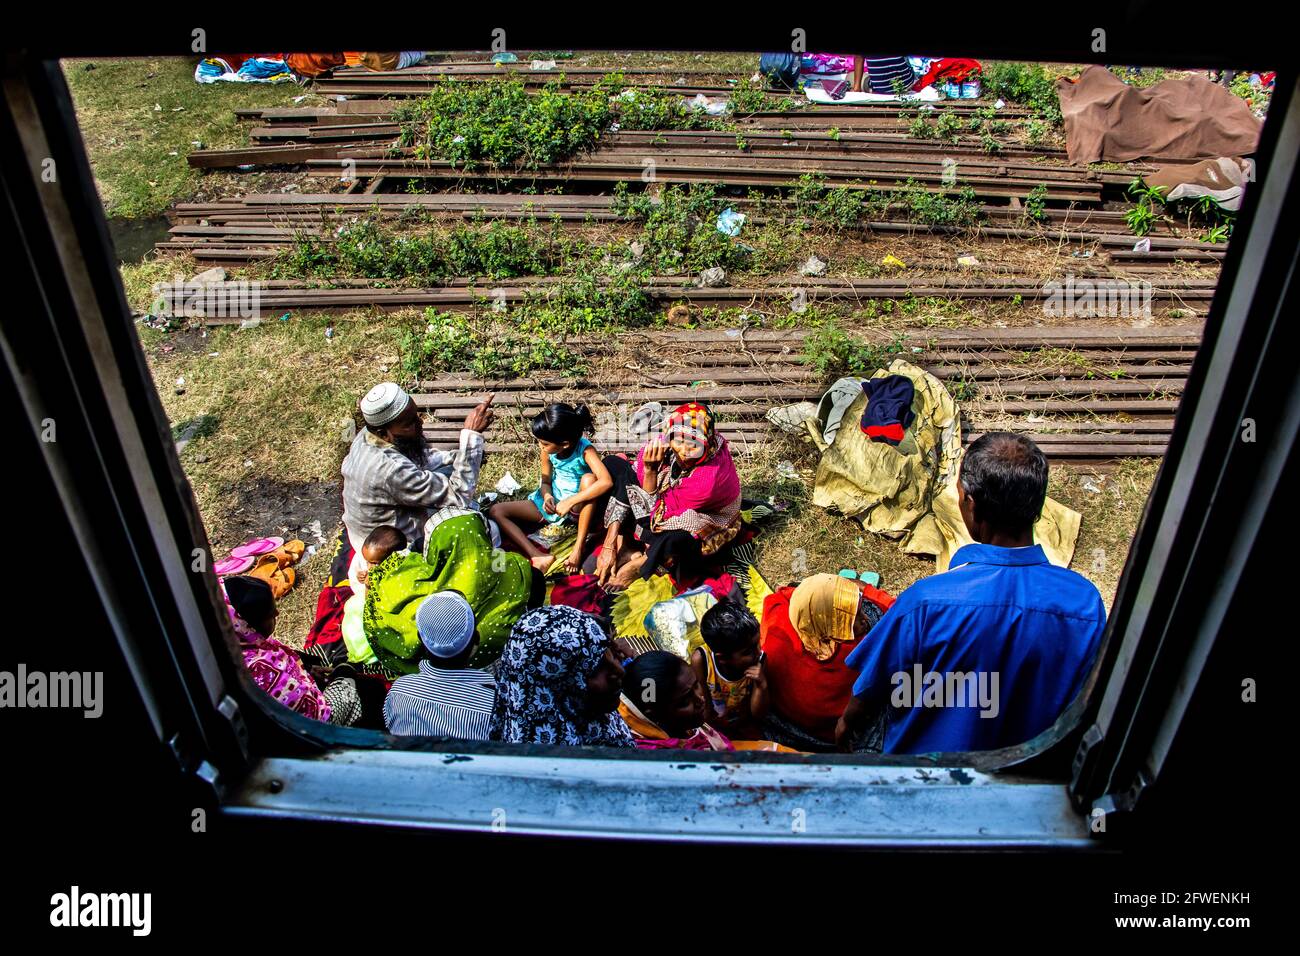 La gente está esperando el tren que capturé esta imagen el 19th de febrero de 2019 desde Tonggi, Bangladesh, Asia, Asia del Sur Foto de stock